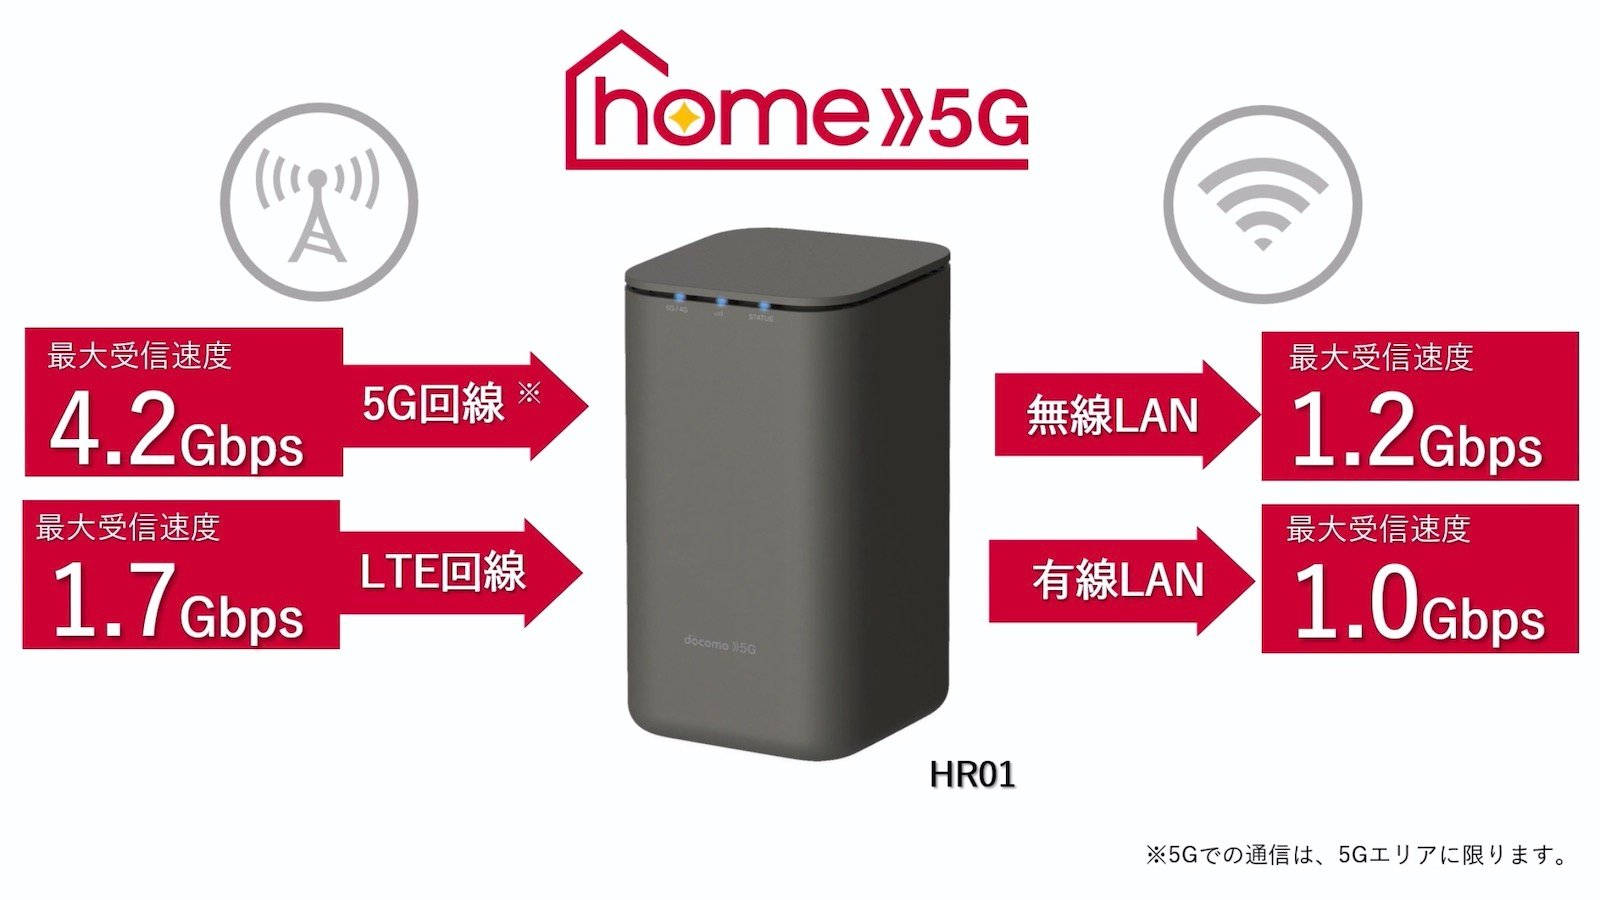 ドコモ、月額4,950円・データ使い放題の5Gホームルーター「home 5G」を8月下旬開始